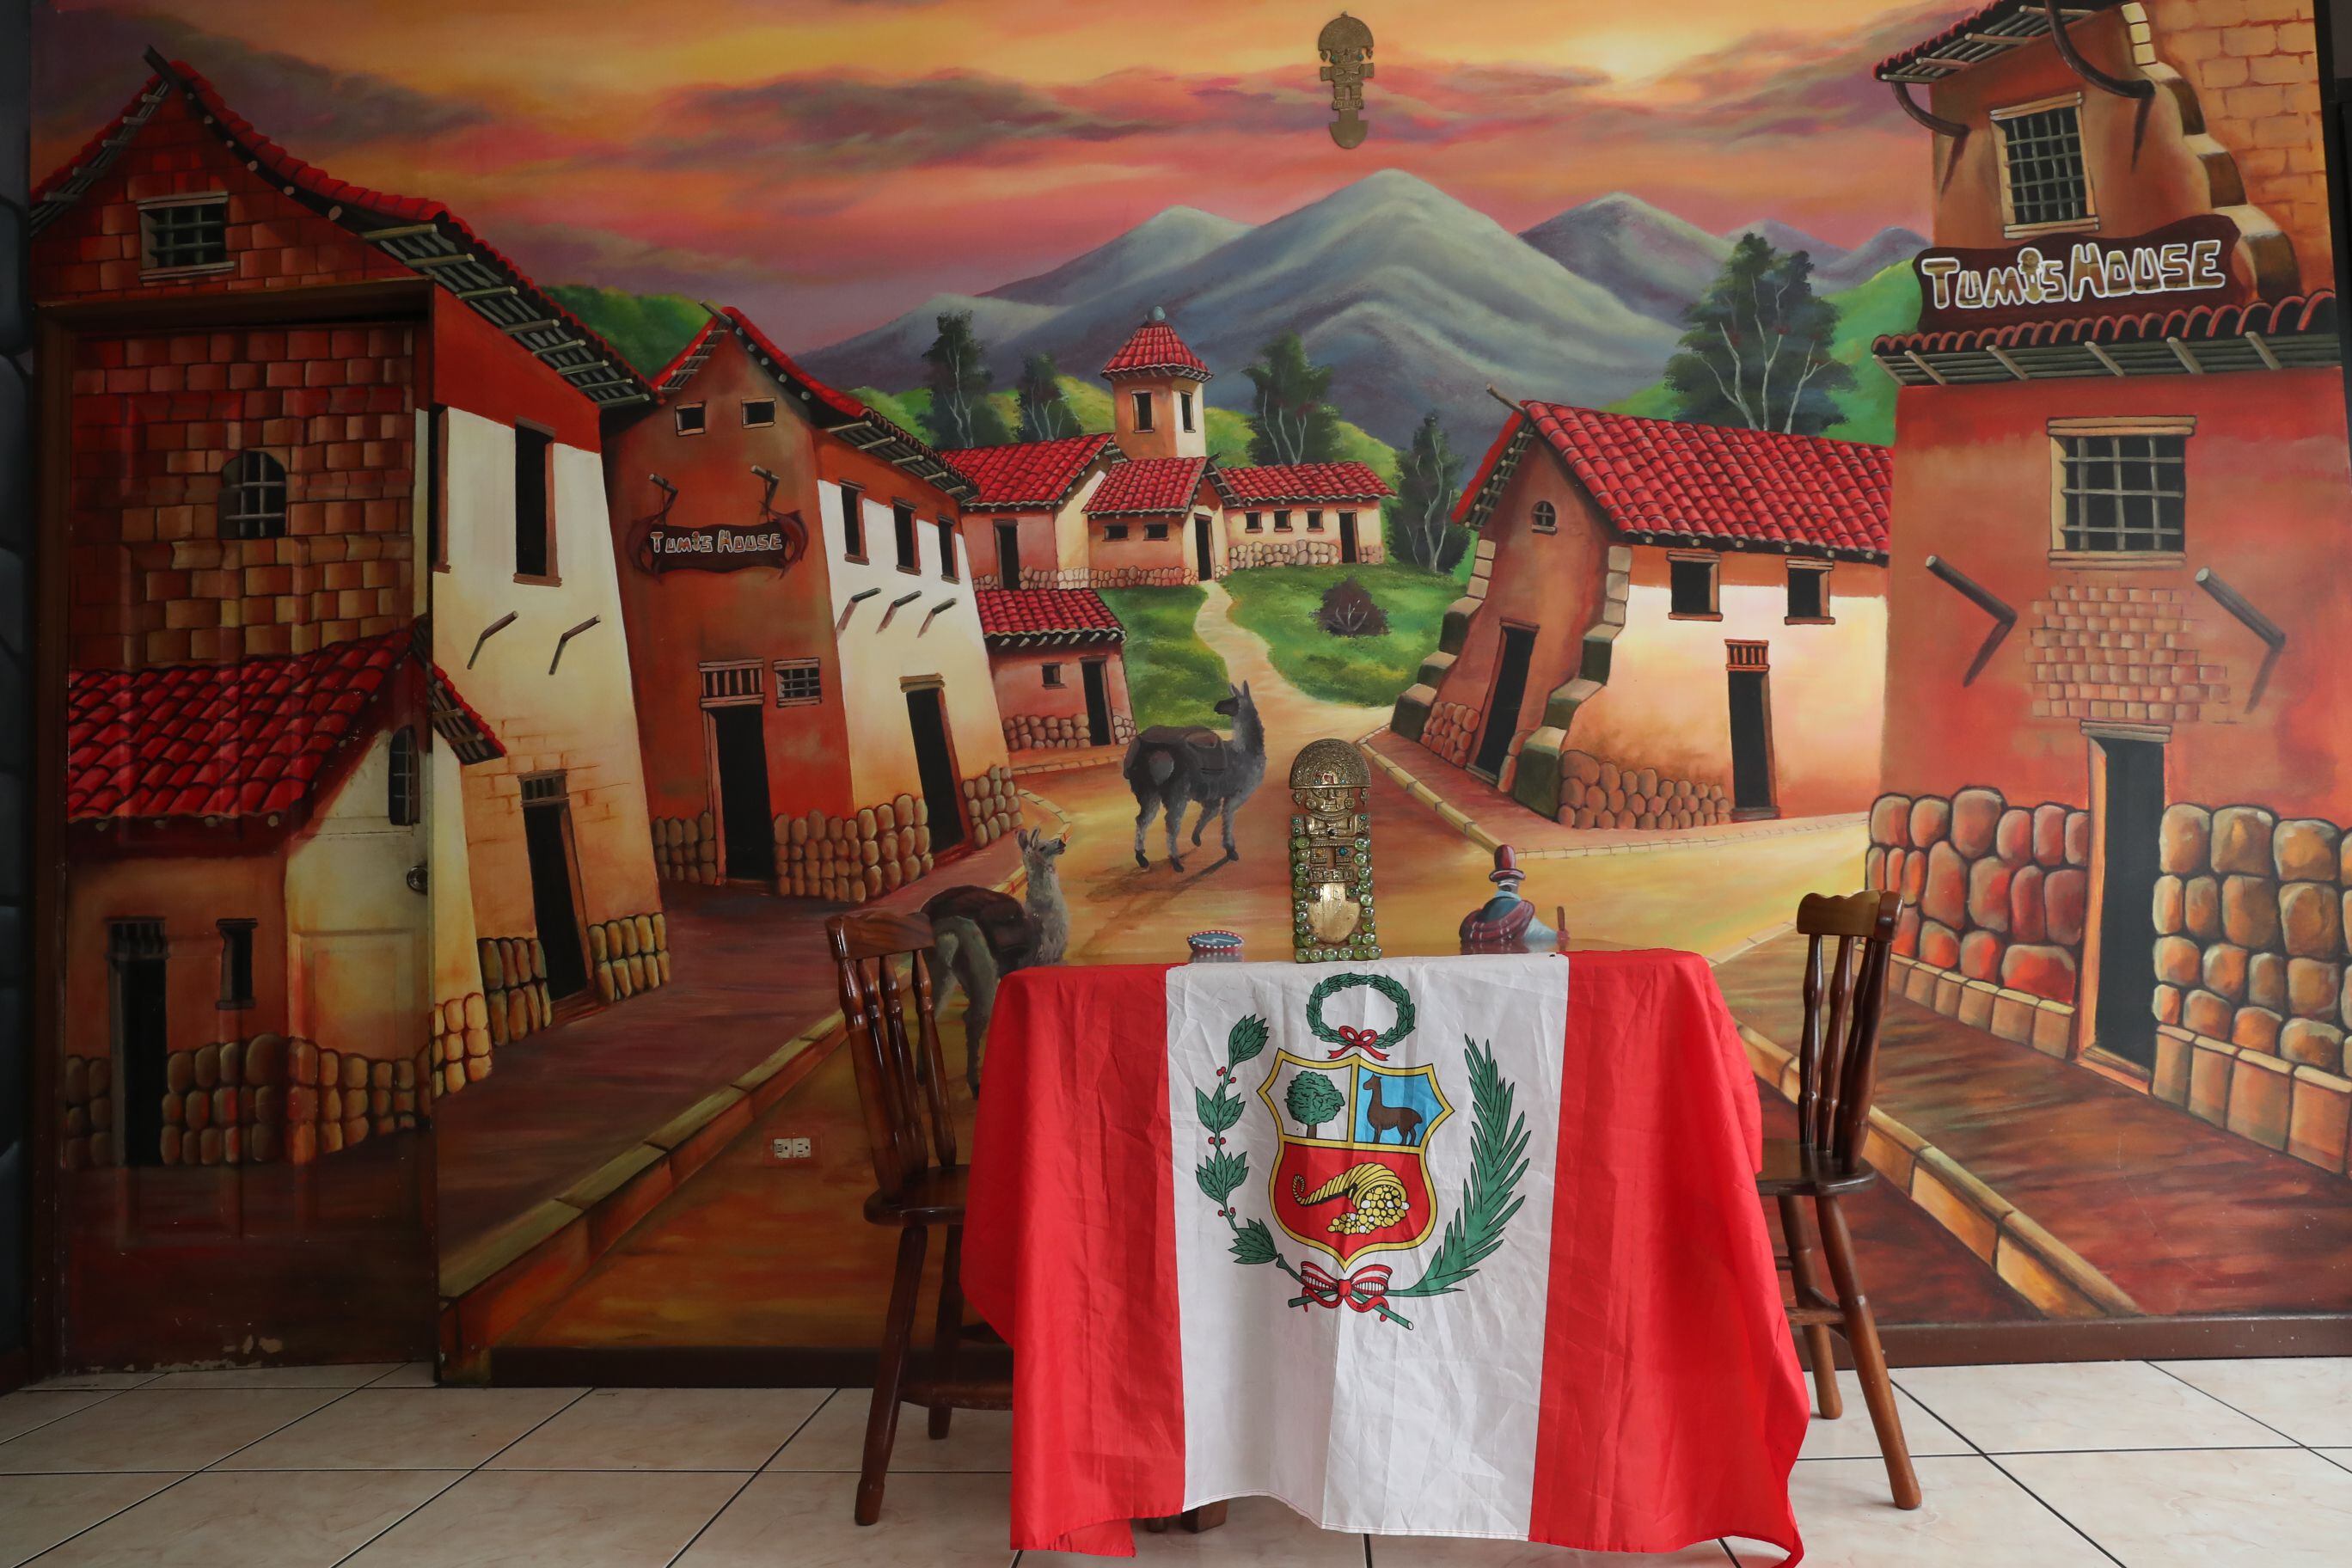 La decoración es bastante original y muy apegada a la cultura peruana. 